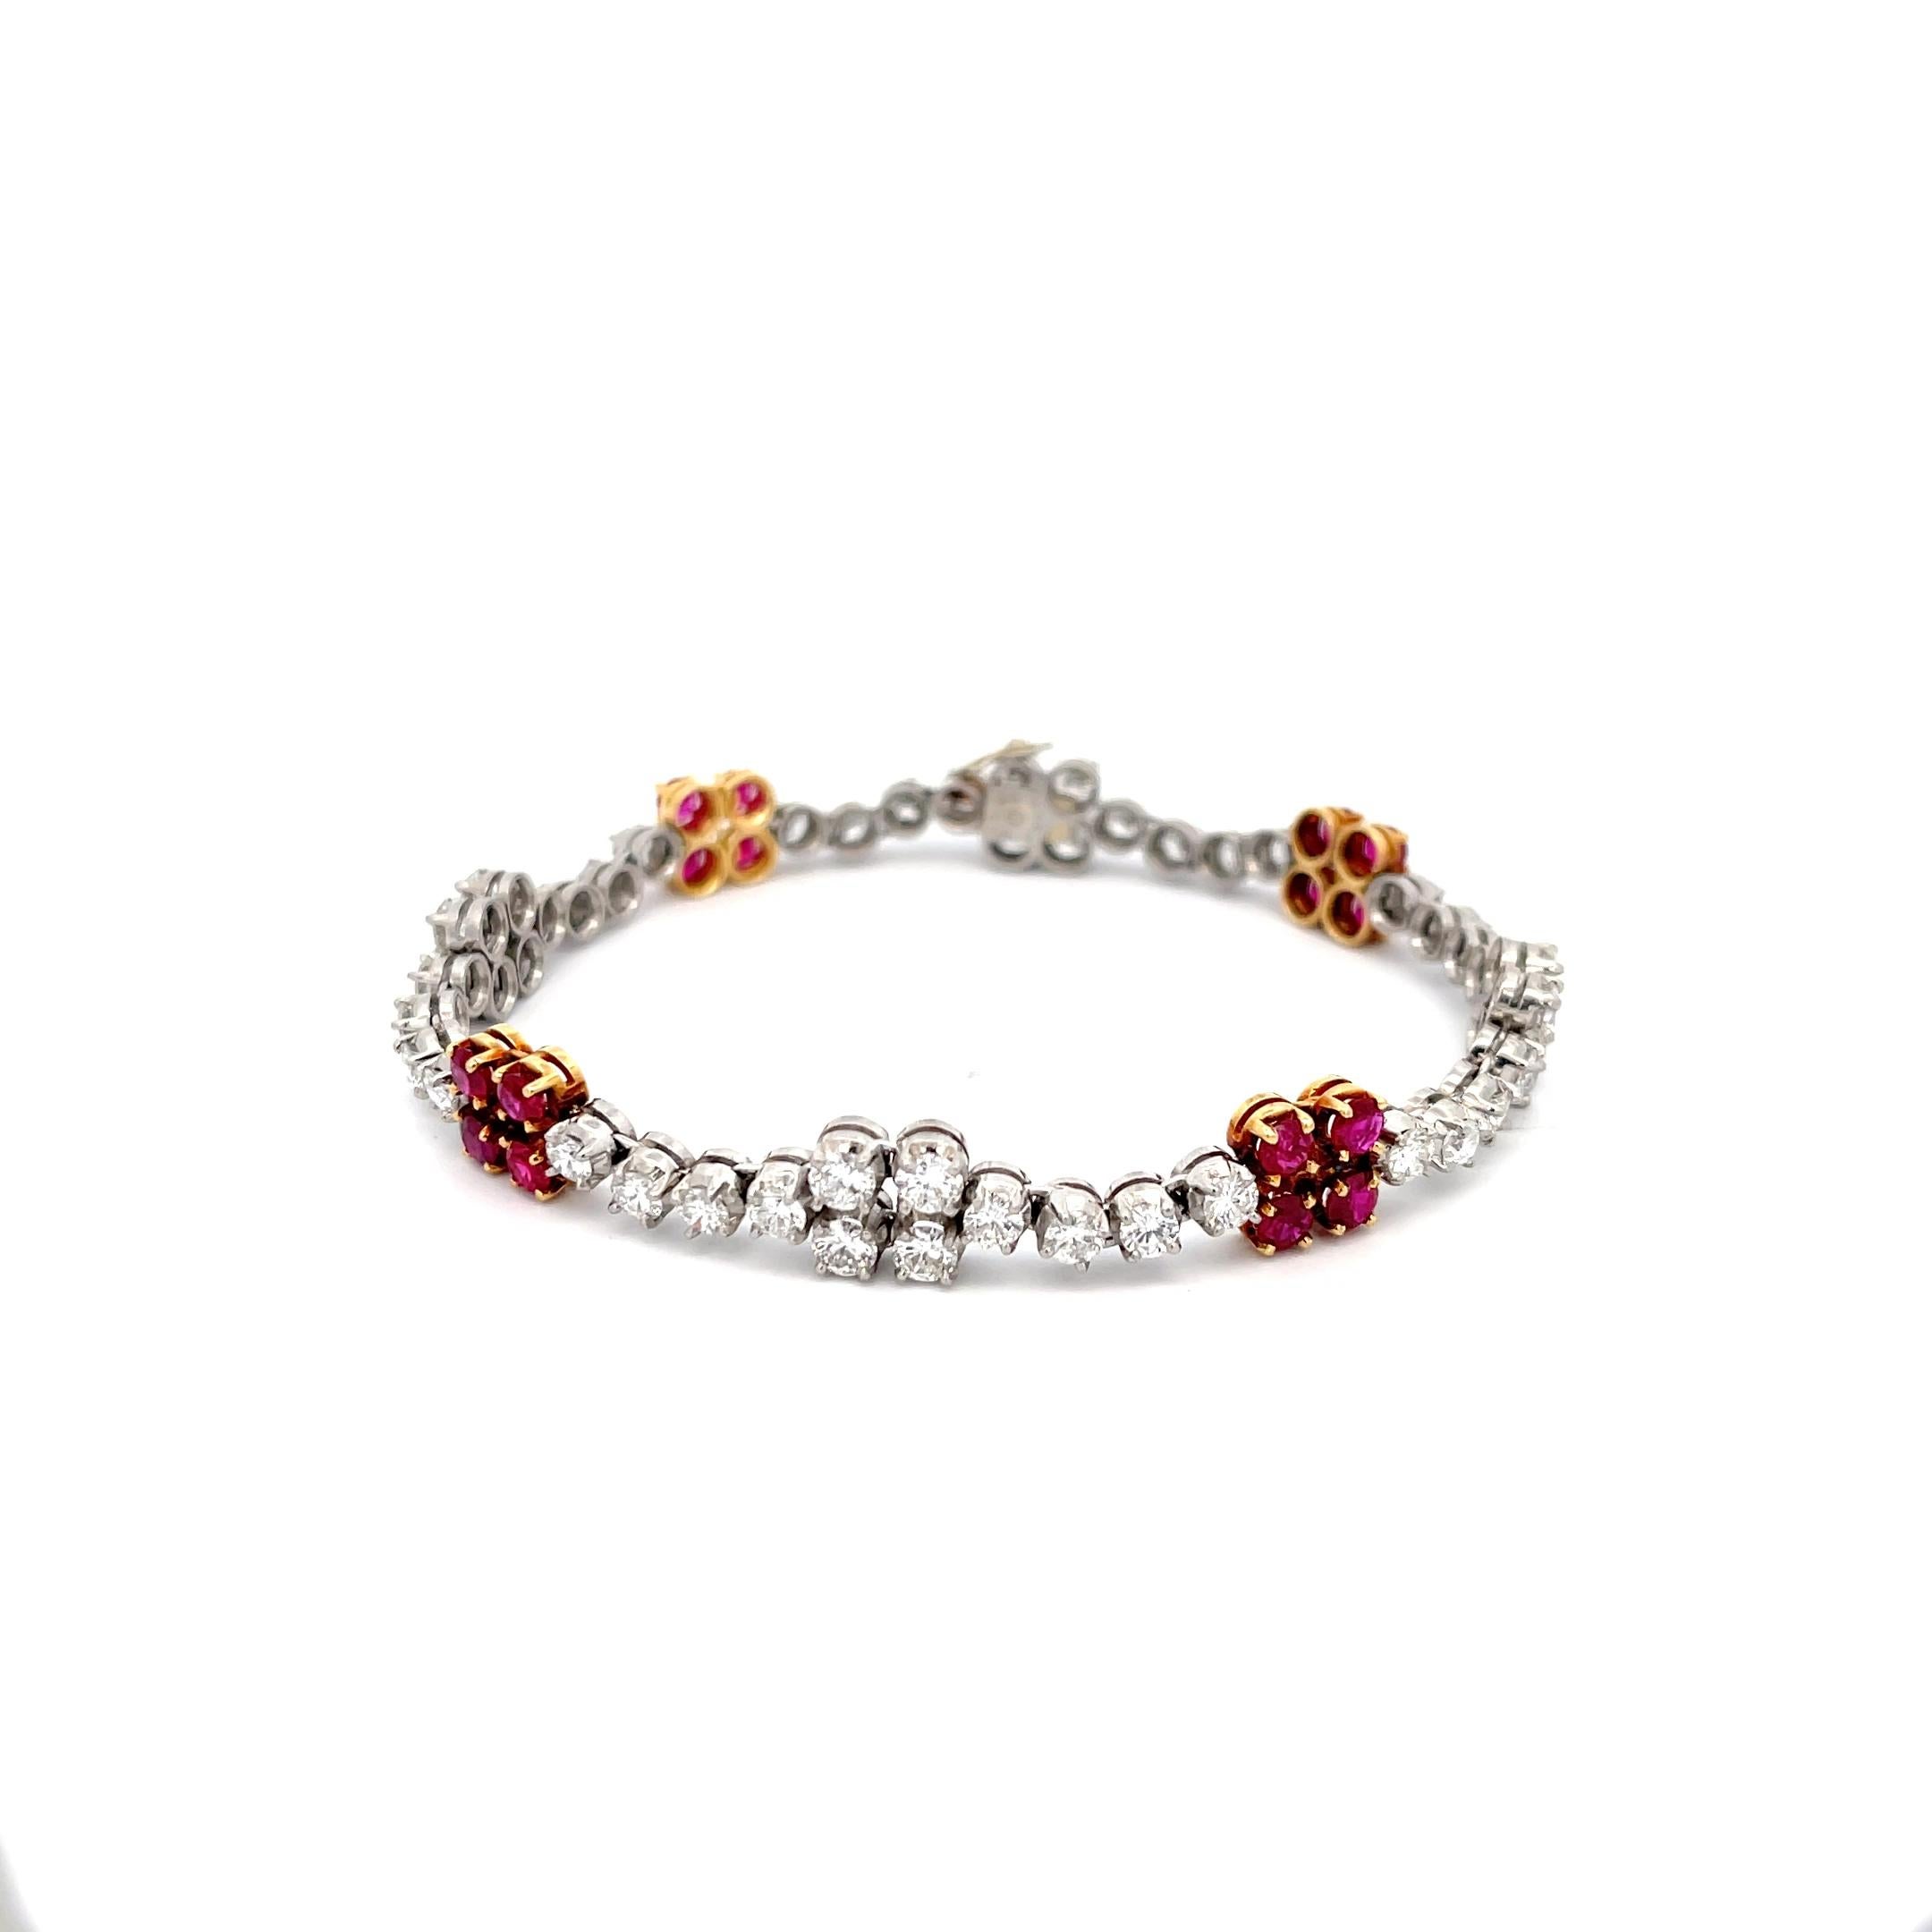 Bracelet en platine et or jaune 18 carats avec rubis et diamants. Le bracelet contient environ 2,40ctw de rubis et 5,45ctw de diamants. 
Longueur de 7 pouces
0.25